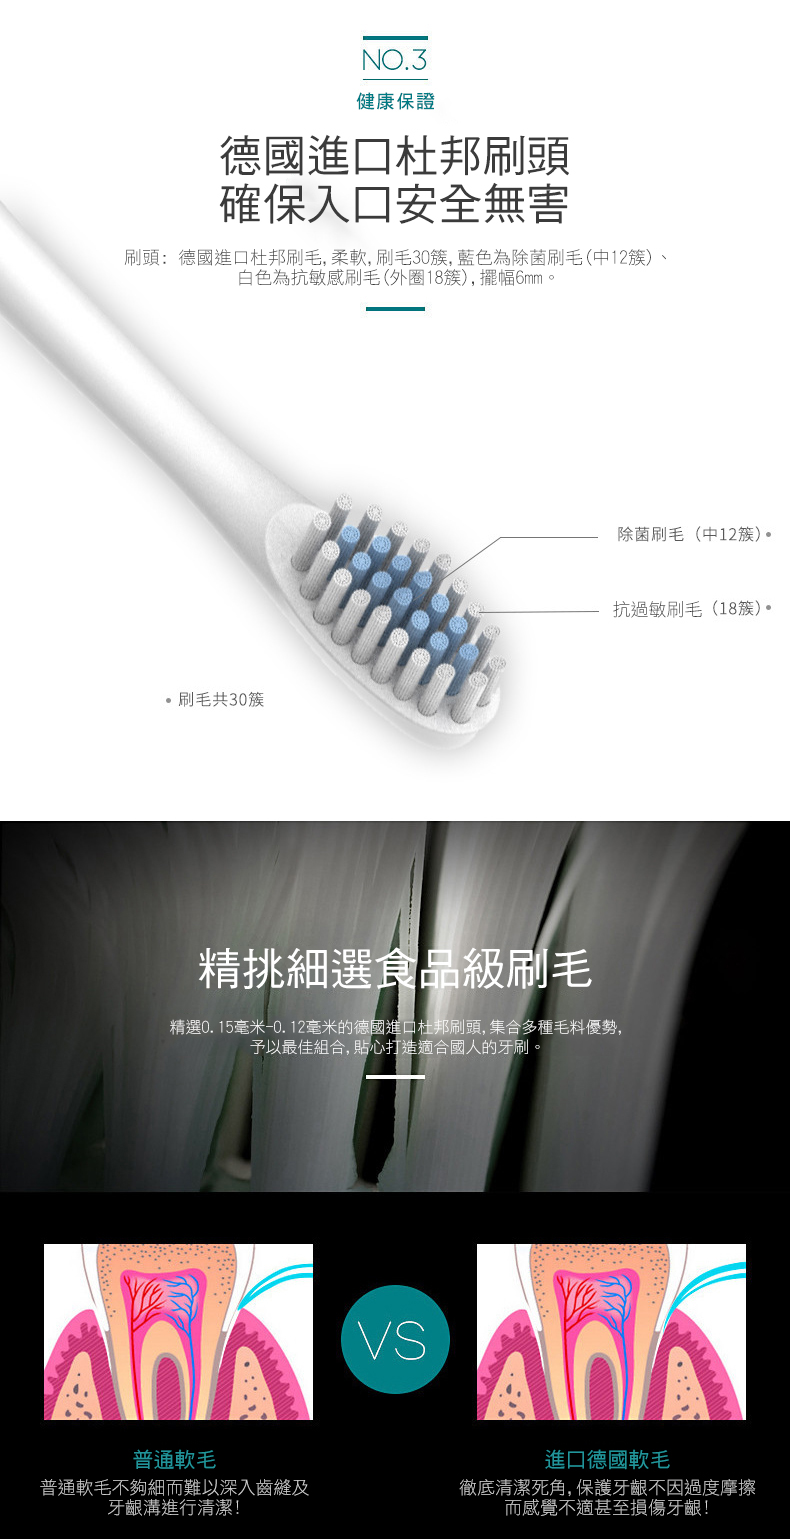 【星球米琪】充電式超聲波六檔電動牙刷 口腔保健/牙刷/USB充電/旅行便攜